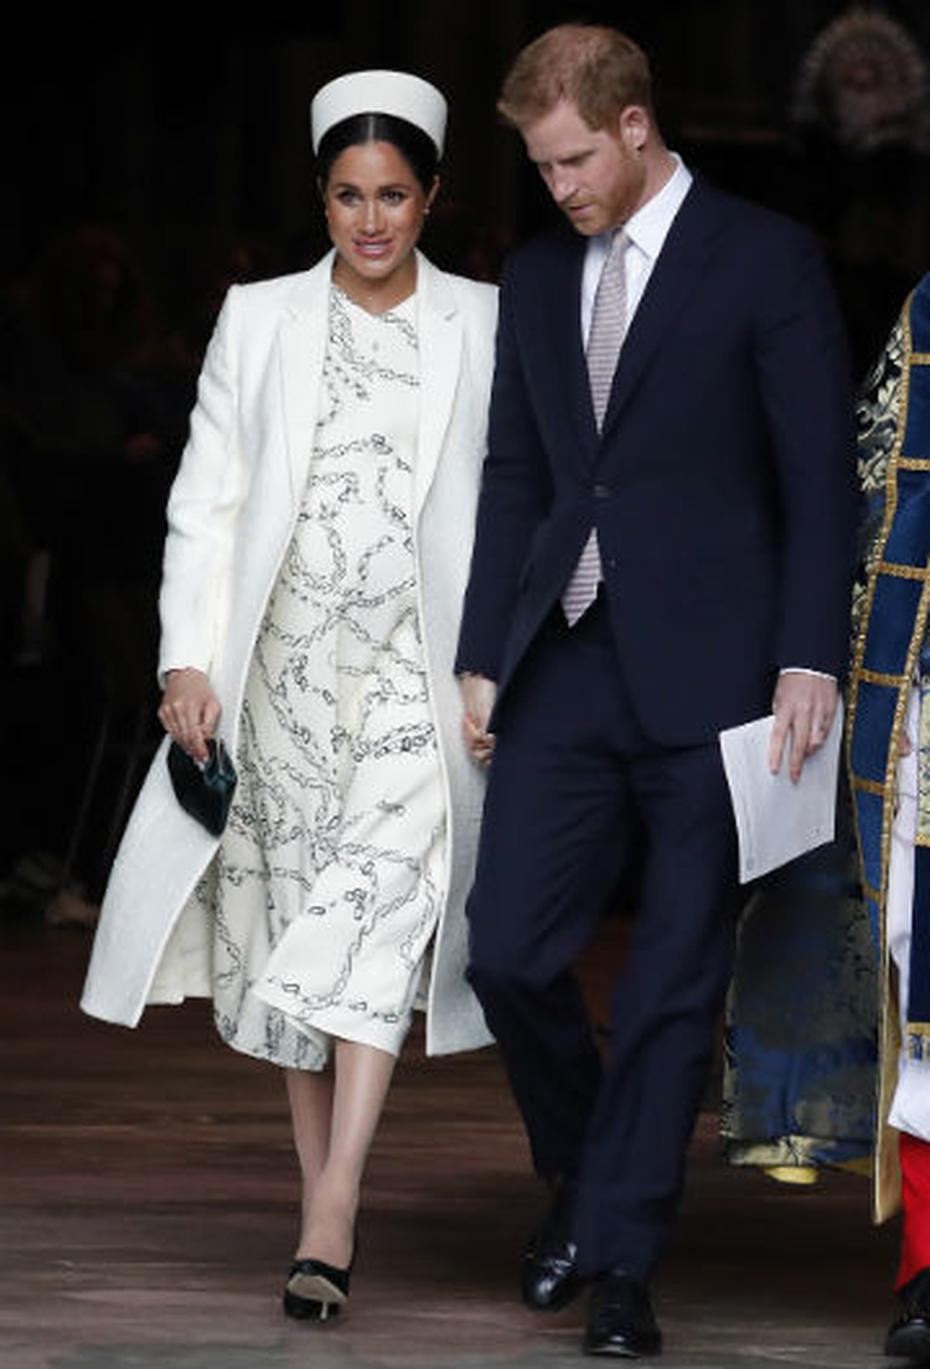 Para la celebración de los 50 años de la investidura de Charles como príncipe de Gales, Megan seleccionó un vestido en brocados plateados y dorados con abrigo blanco de Amanda Wakeley. (Archivo)